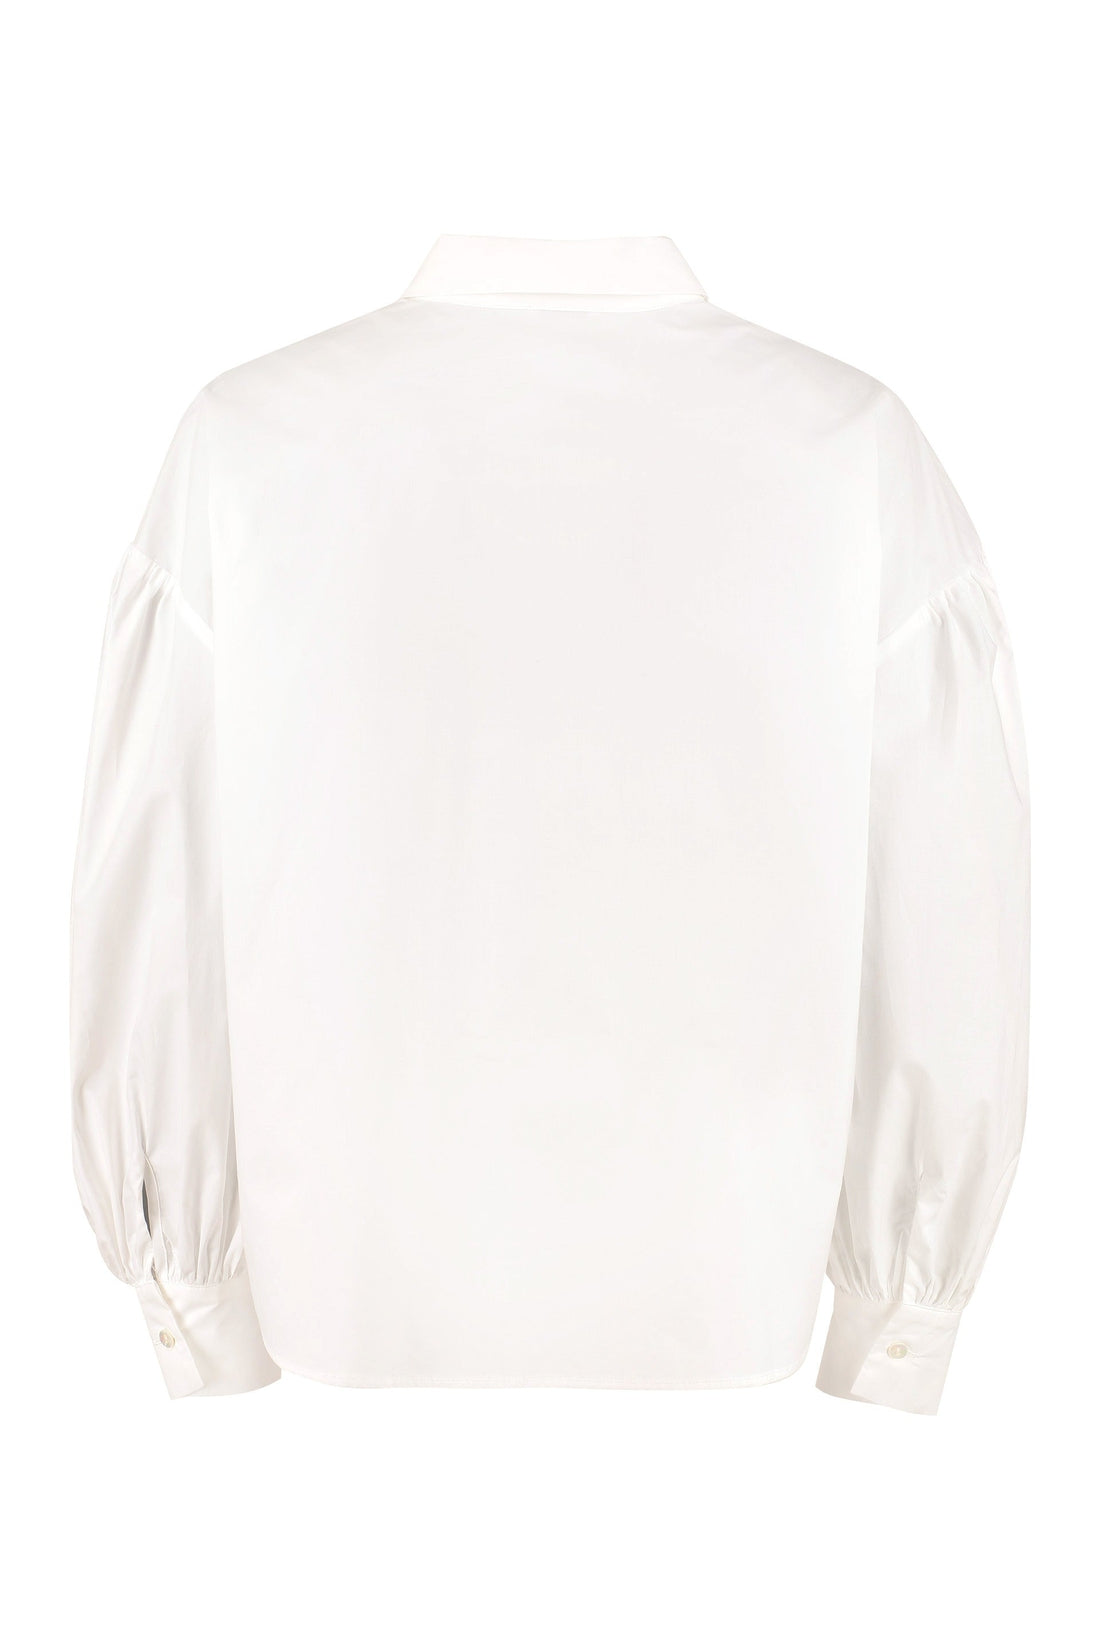 Parosh-OUTLET-SALE-Long sleeve cotton shirt-ARCHIVIST